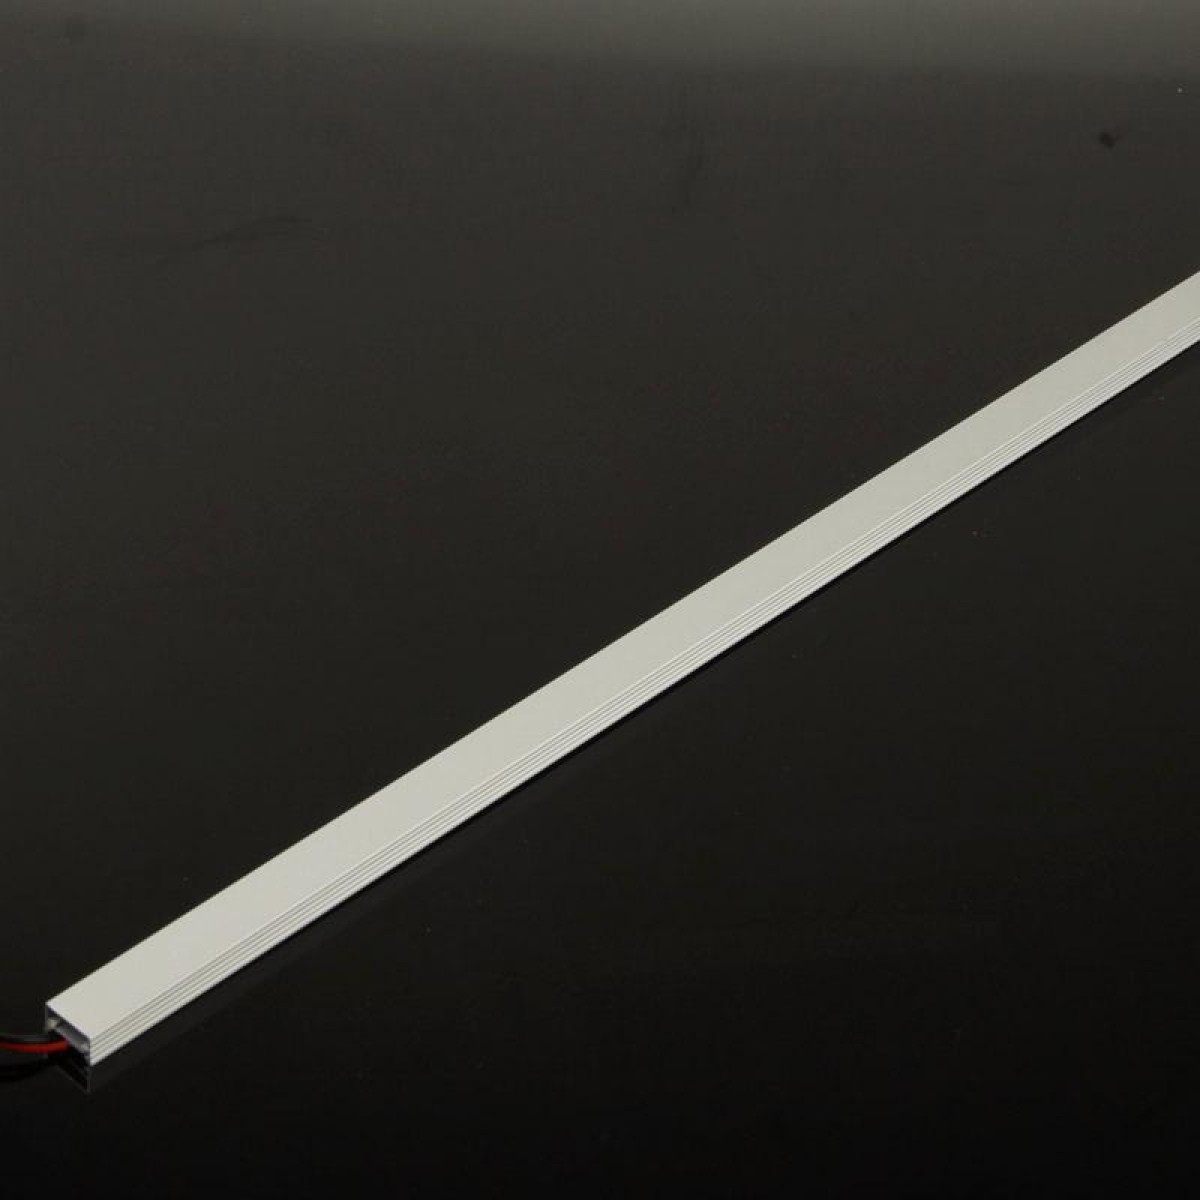 8.5W Aluminum Light Bar with Square Holder, 36 LED 5050 SMD, White Light, Length: 50cm